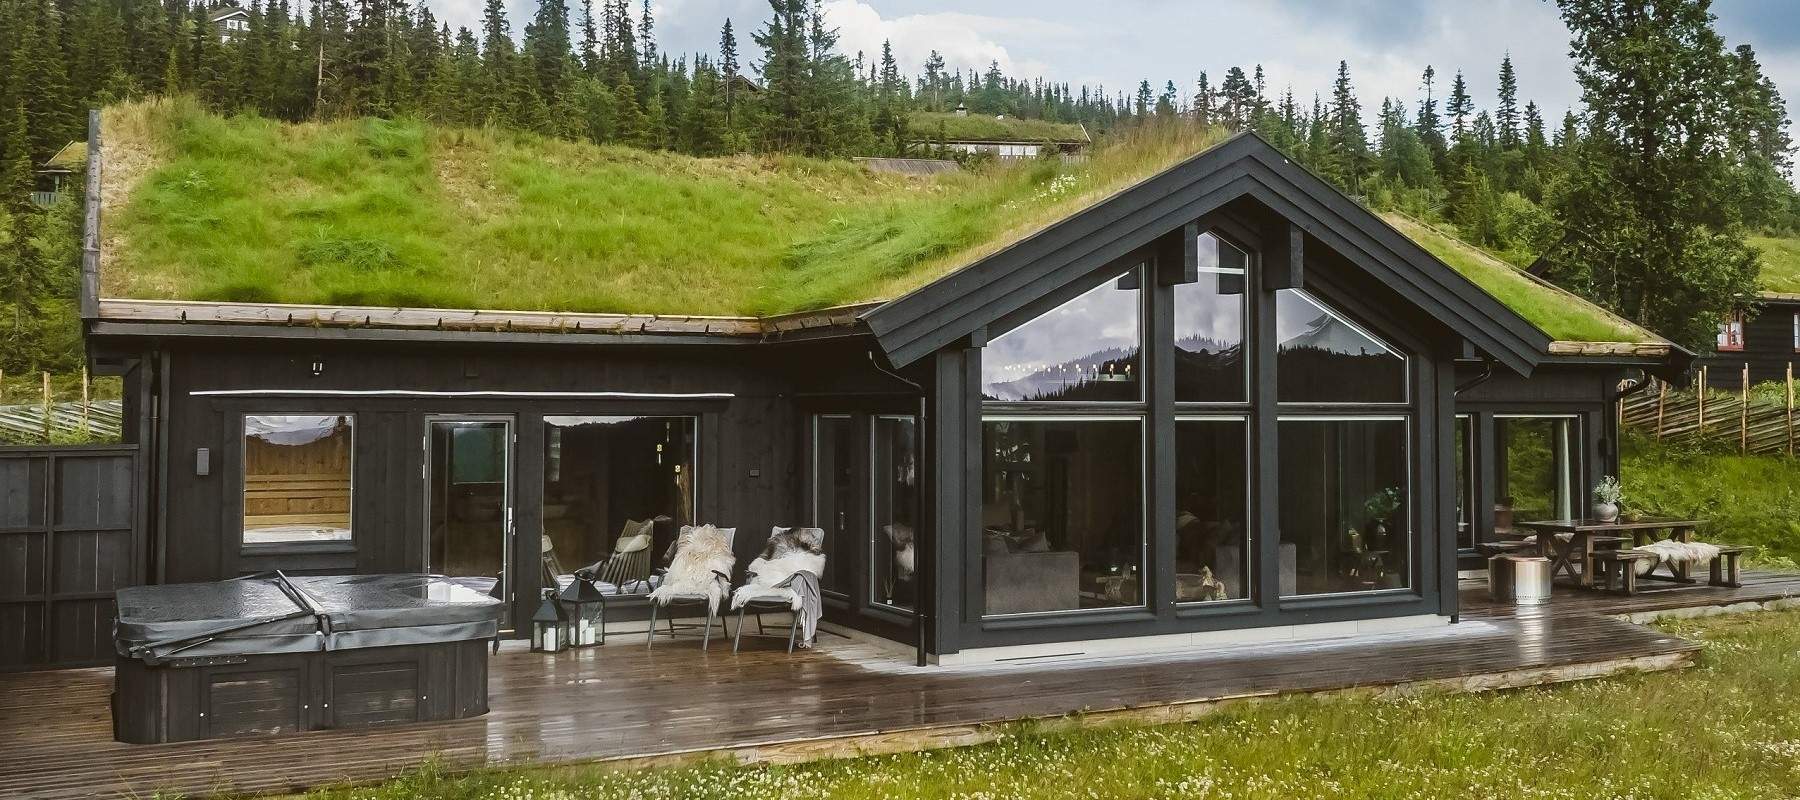 20 Hytte på Nesbyen – hyttemodell Nesbyen 149- Hytteleverandør Tiurtoppen Hytter